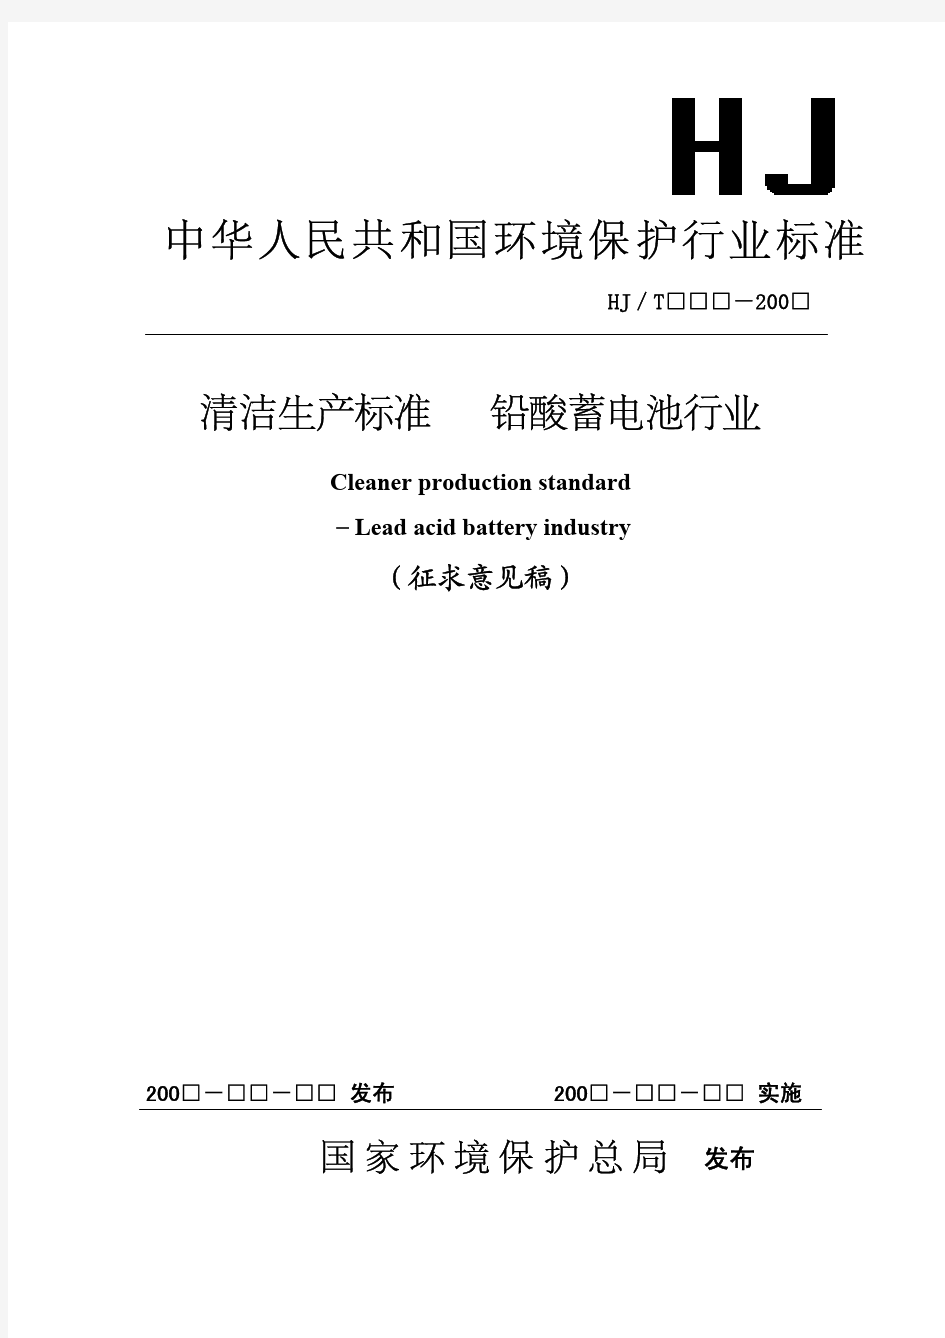 中华人民共和国环境保护行业标准